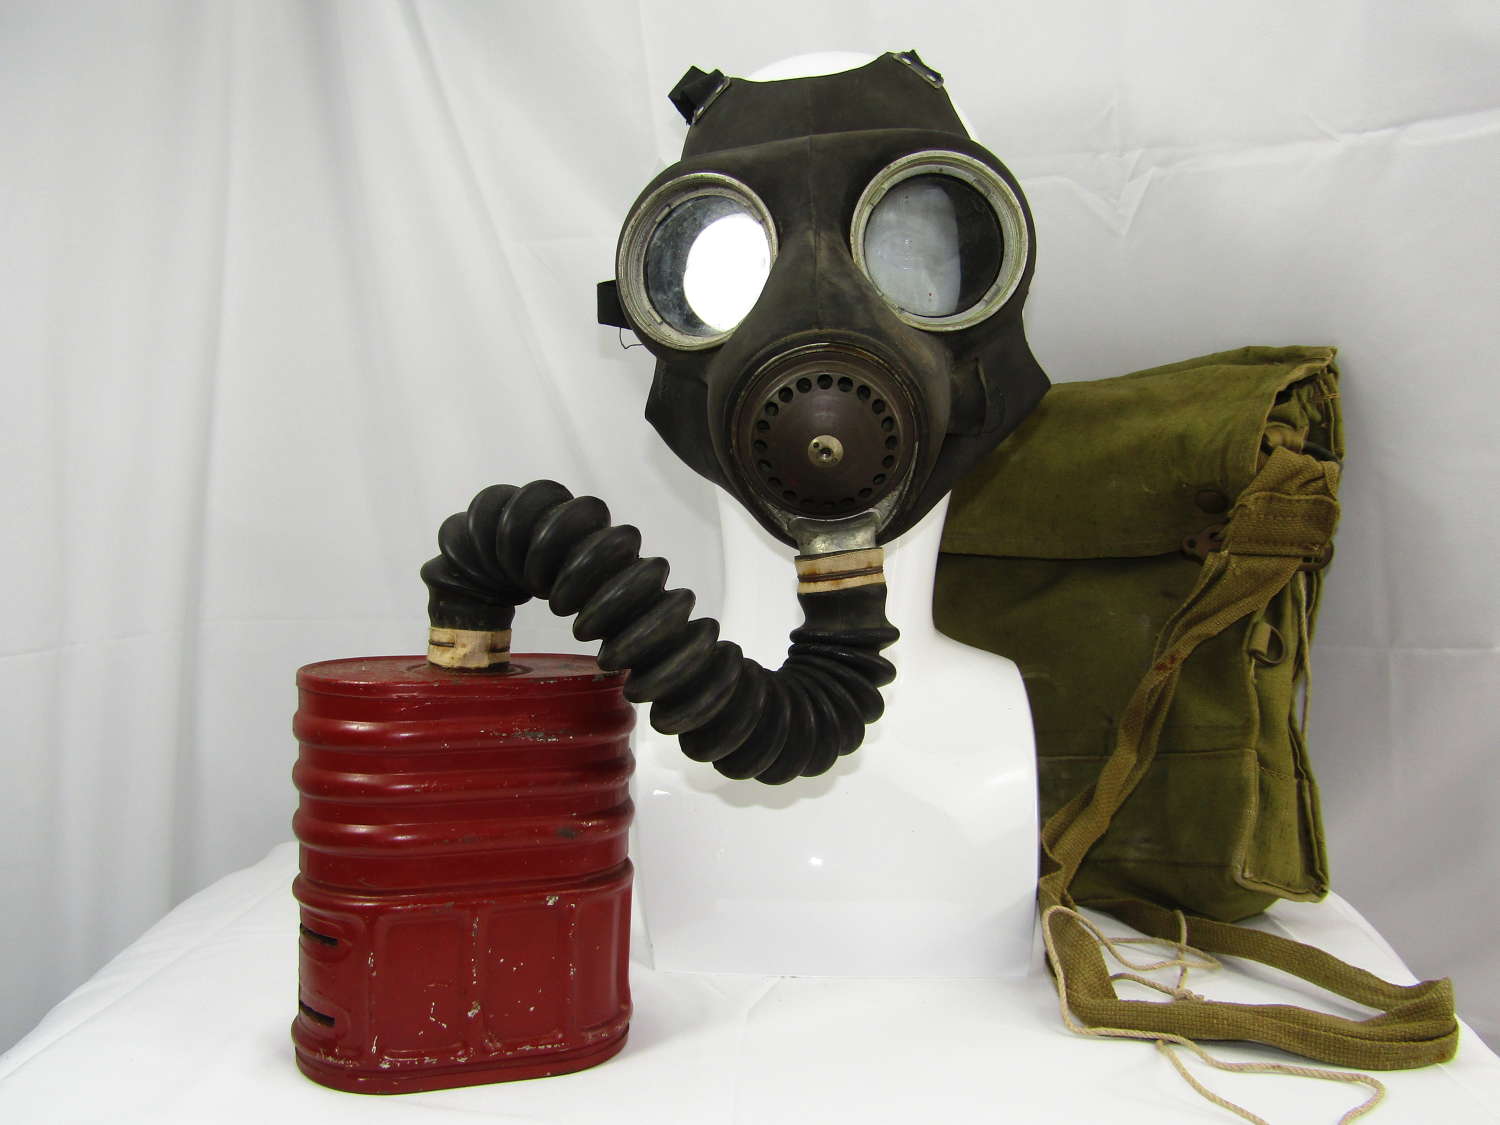 WW2 British gas mask and bag